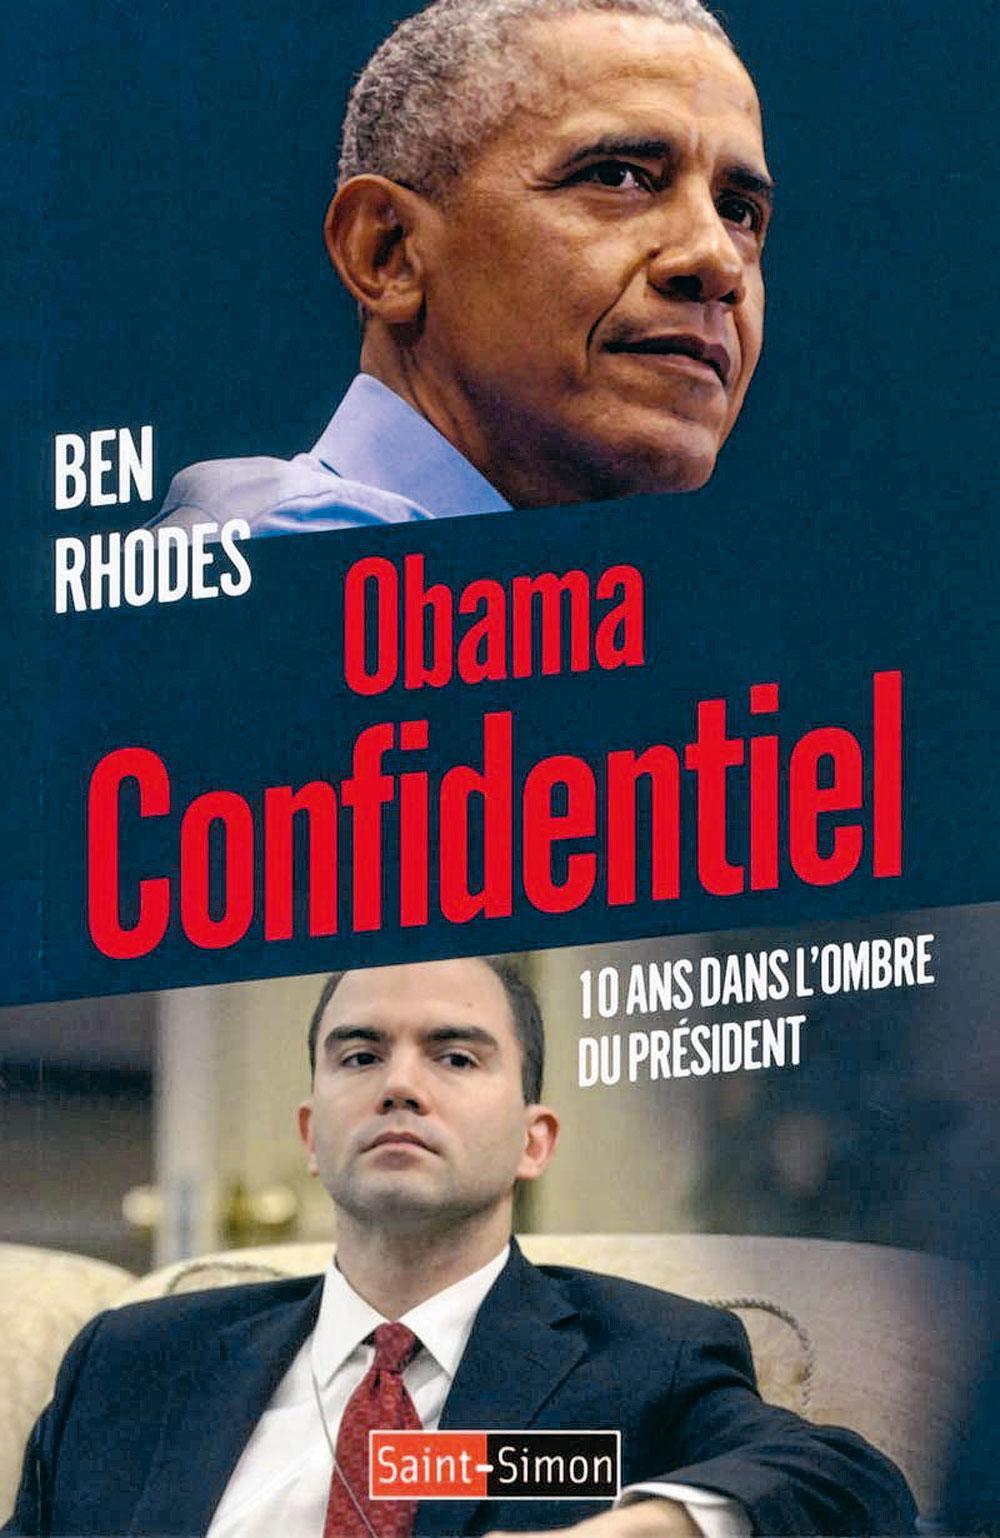 Obama confidentiel. 10 ans dans l'ombre du président, par Ben Rhodes, traduit de l'anglais (Etats-Unis) par Etienne Menanteau, Saint-Simon, 389 p.